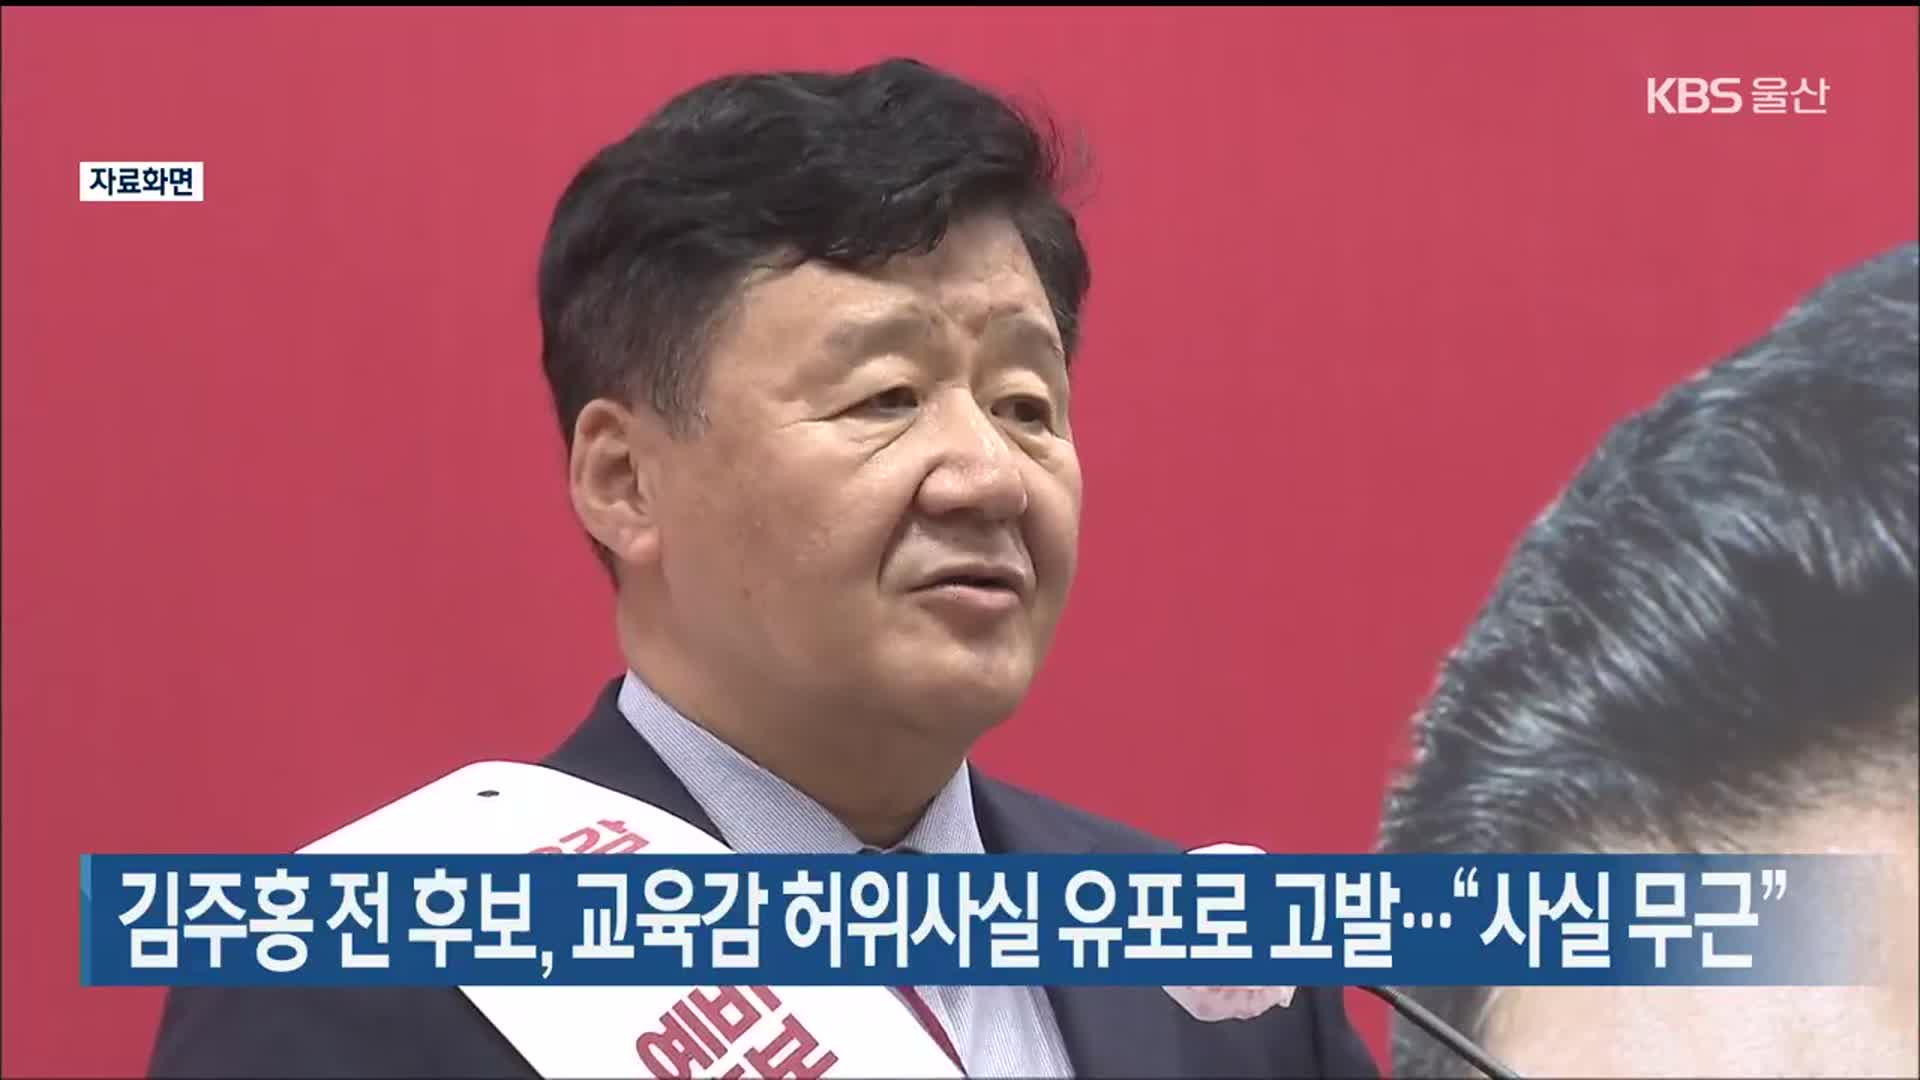 김주홍 전 후보, 교육감 허위사실 유포로 고발…“사실 무근”